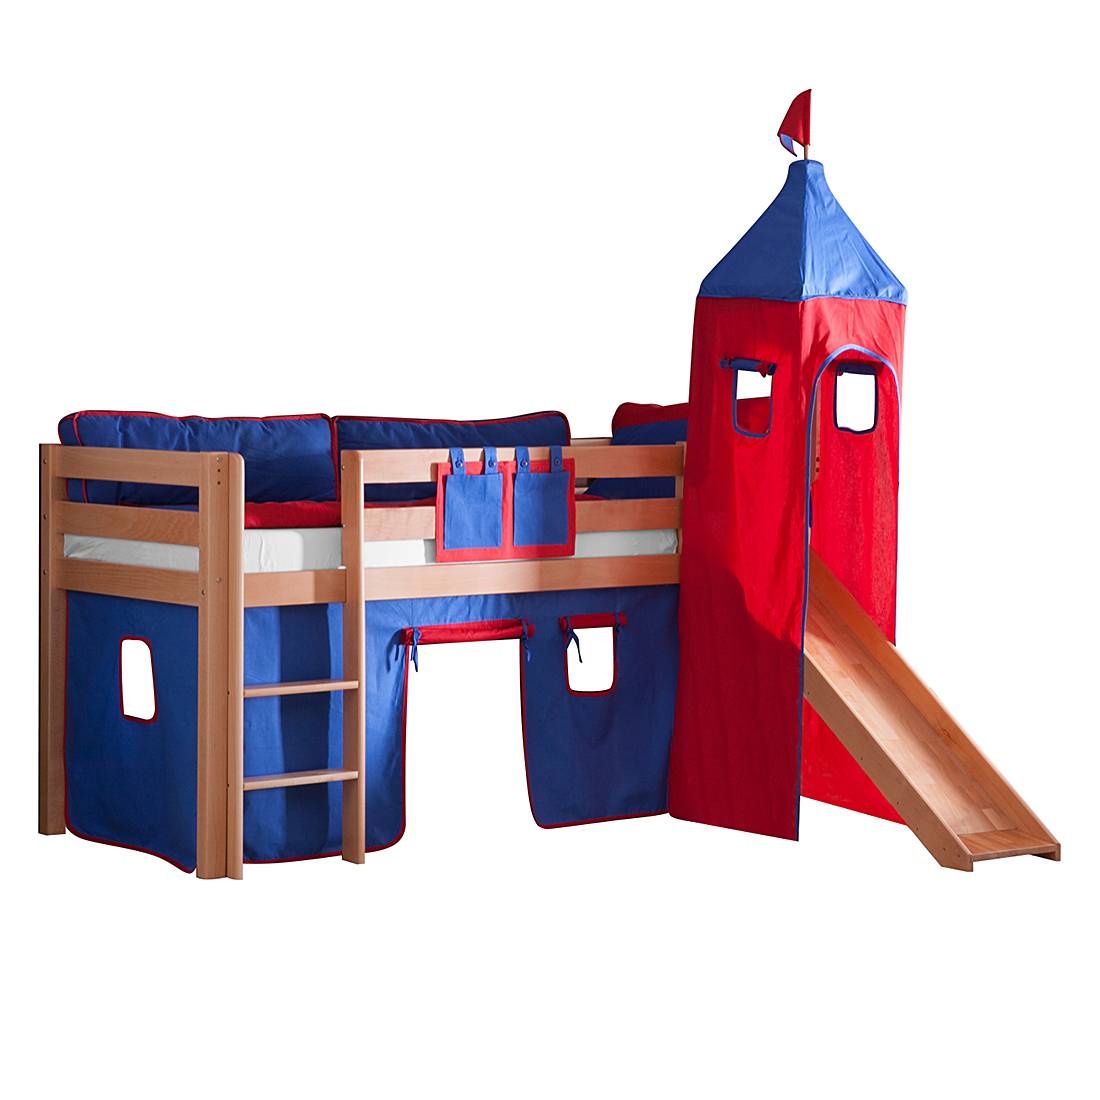 Spielbett Alex - mit Rutsche, Vorhang, Turm und Tasche - Buche Natur/Textil Blau-Rot, Relita